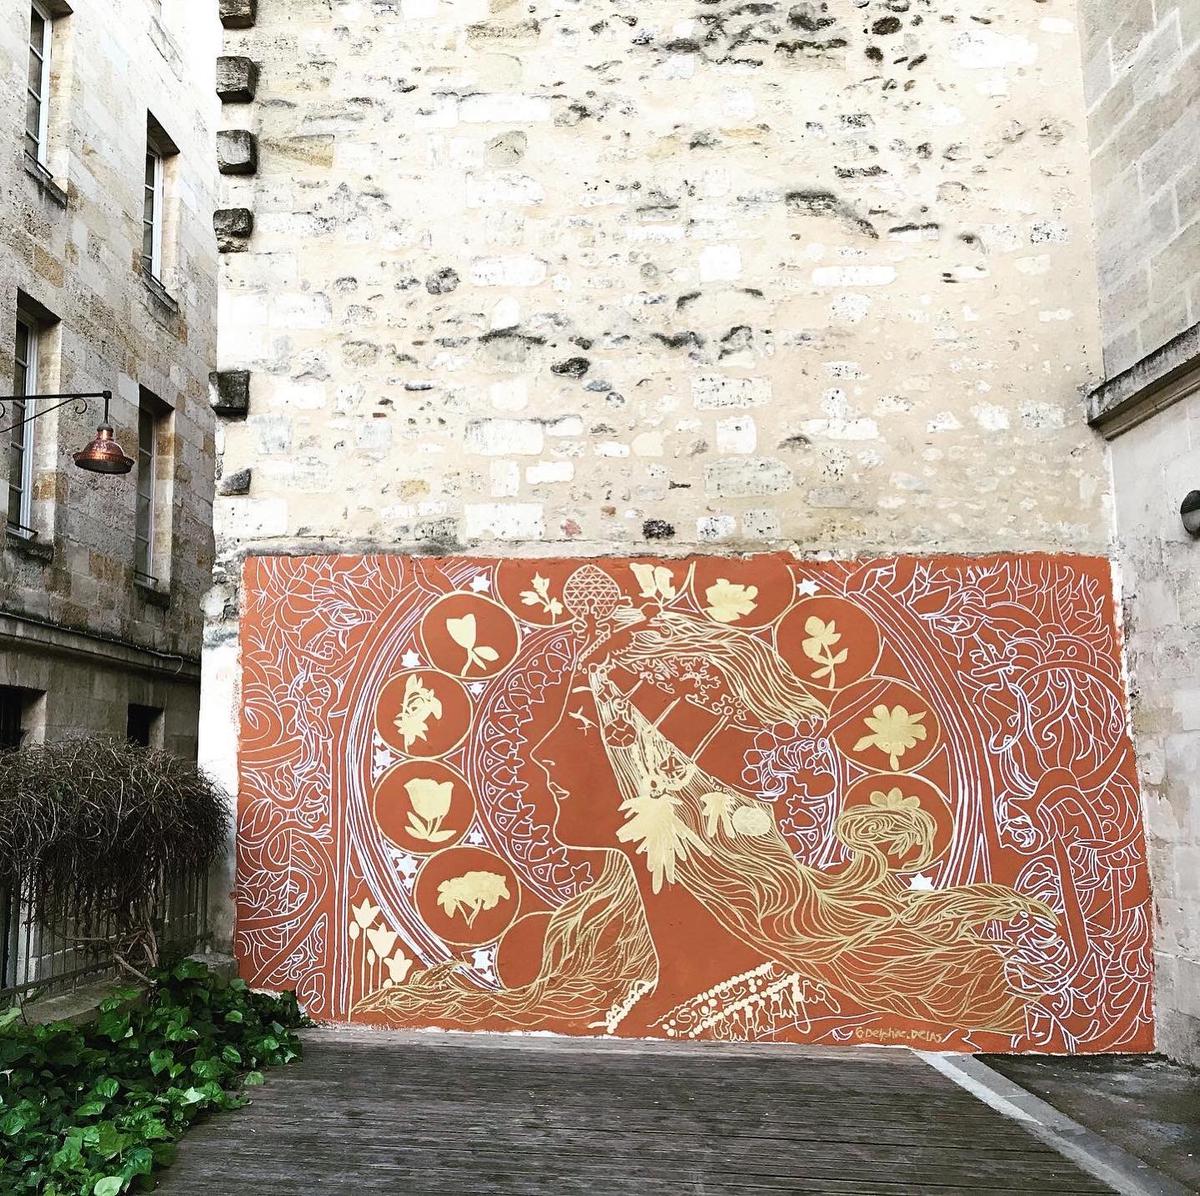 Une fresque murale à Bordeaux quartier Saint-Pierre.